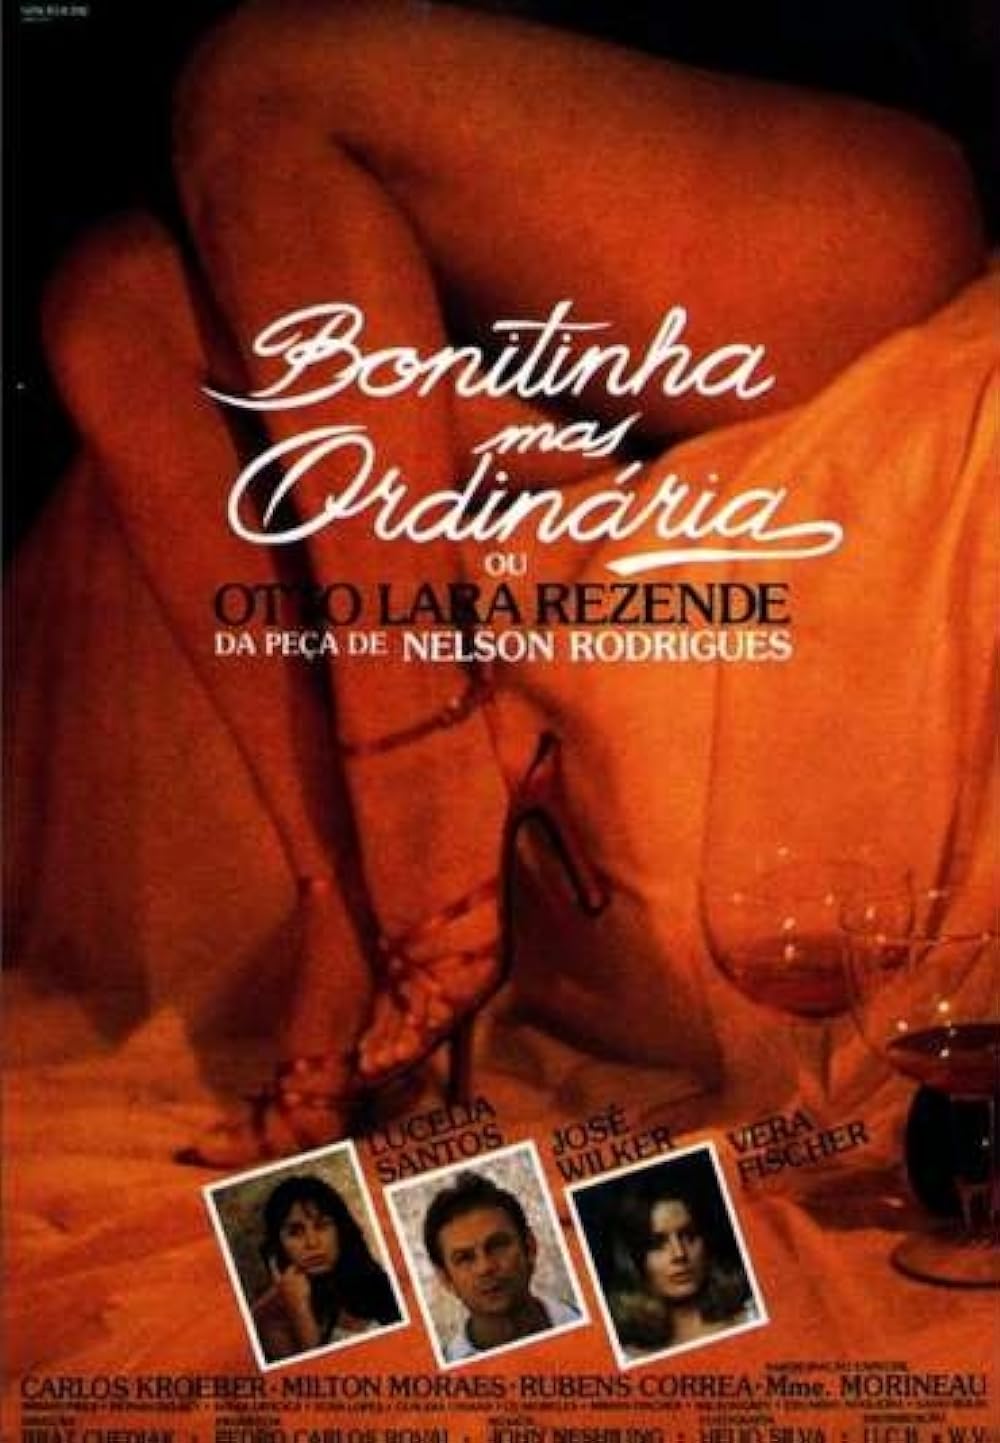 Bonitinha Mas Ordinária ou Otto Lara Rezende 1981 Portuguese